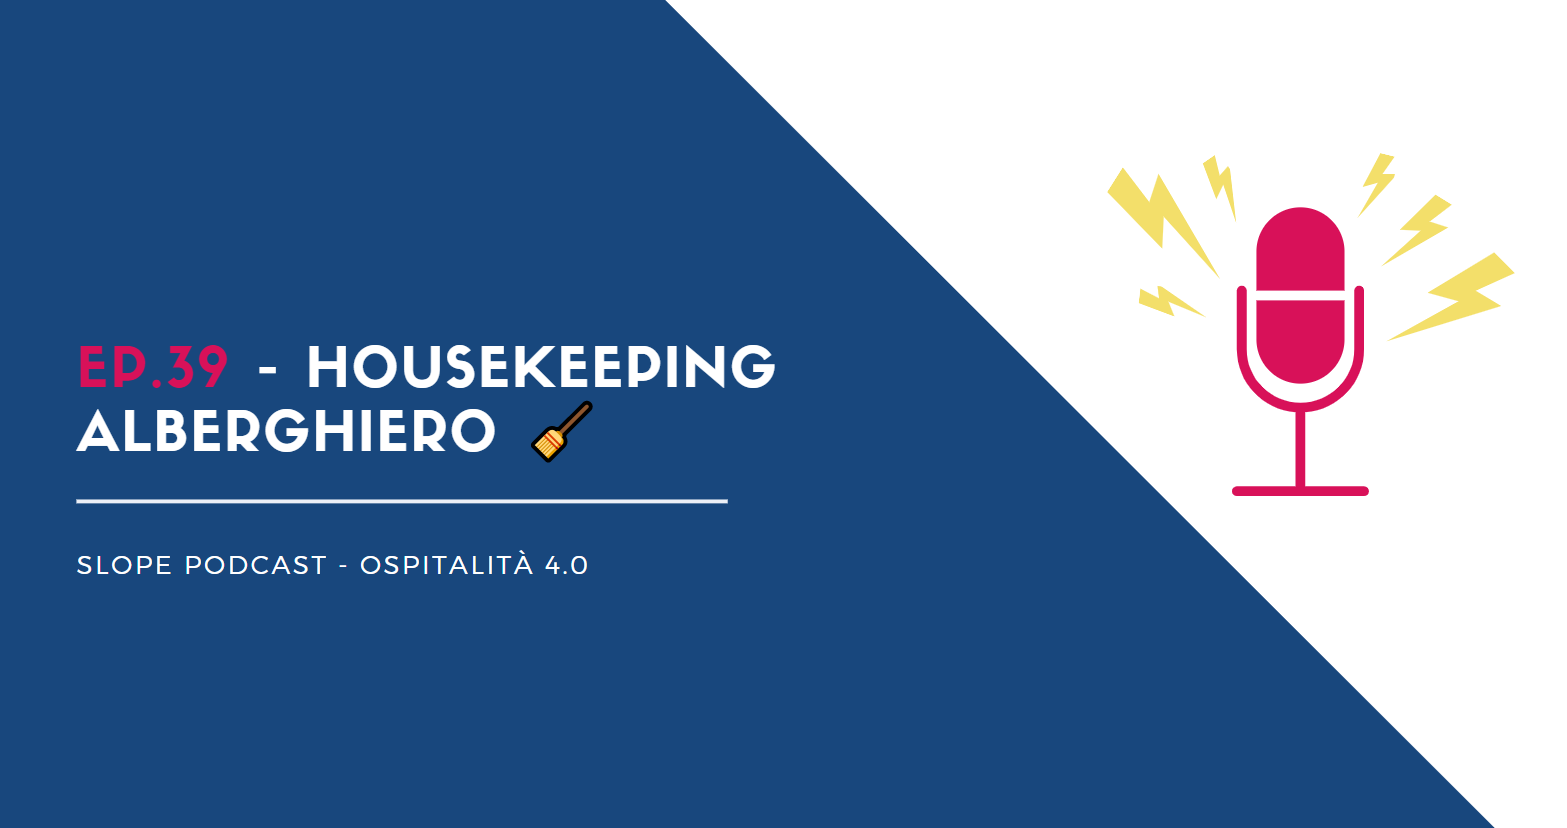 Podcast Ep.39 Housekeeping alberghiero, come migliorare il lavoro delle governanti